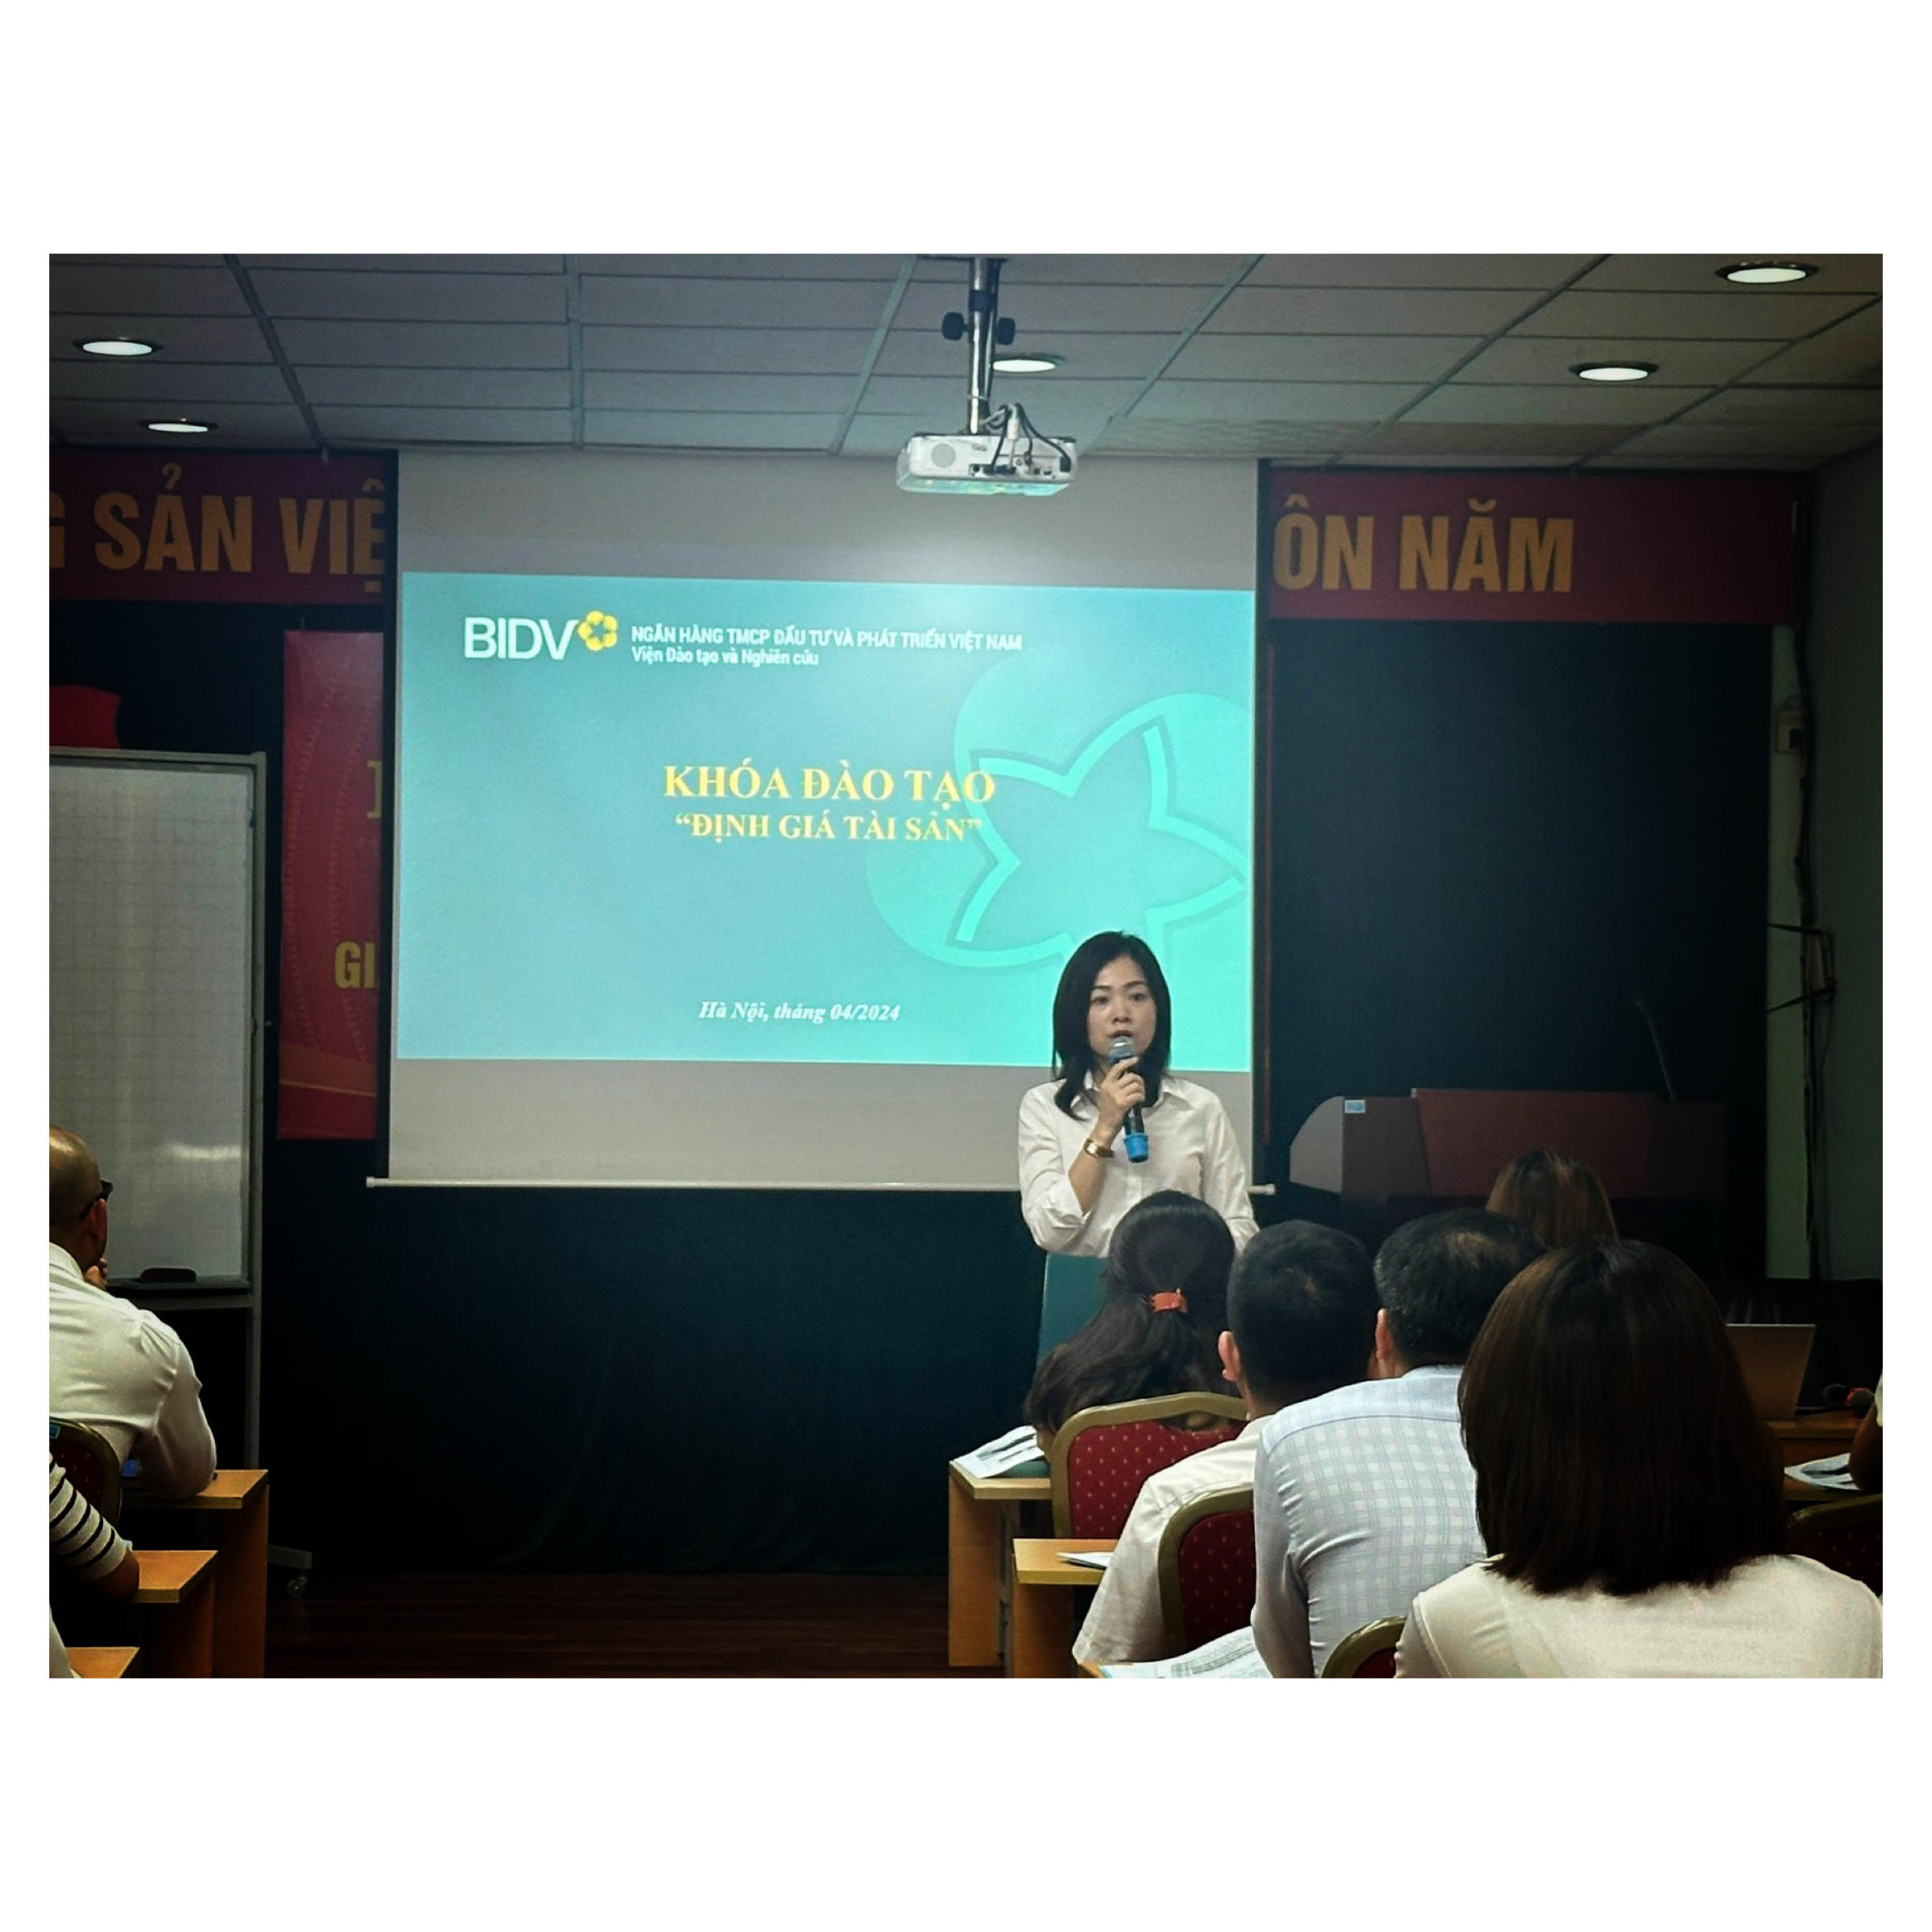 Khai giảng khóa đào tạo định giá tài sản cho các cán bộ ngân hàng Đầu tư và Phát triển Việt Nam (BIDV)